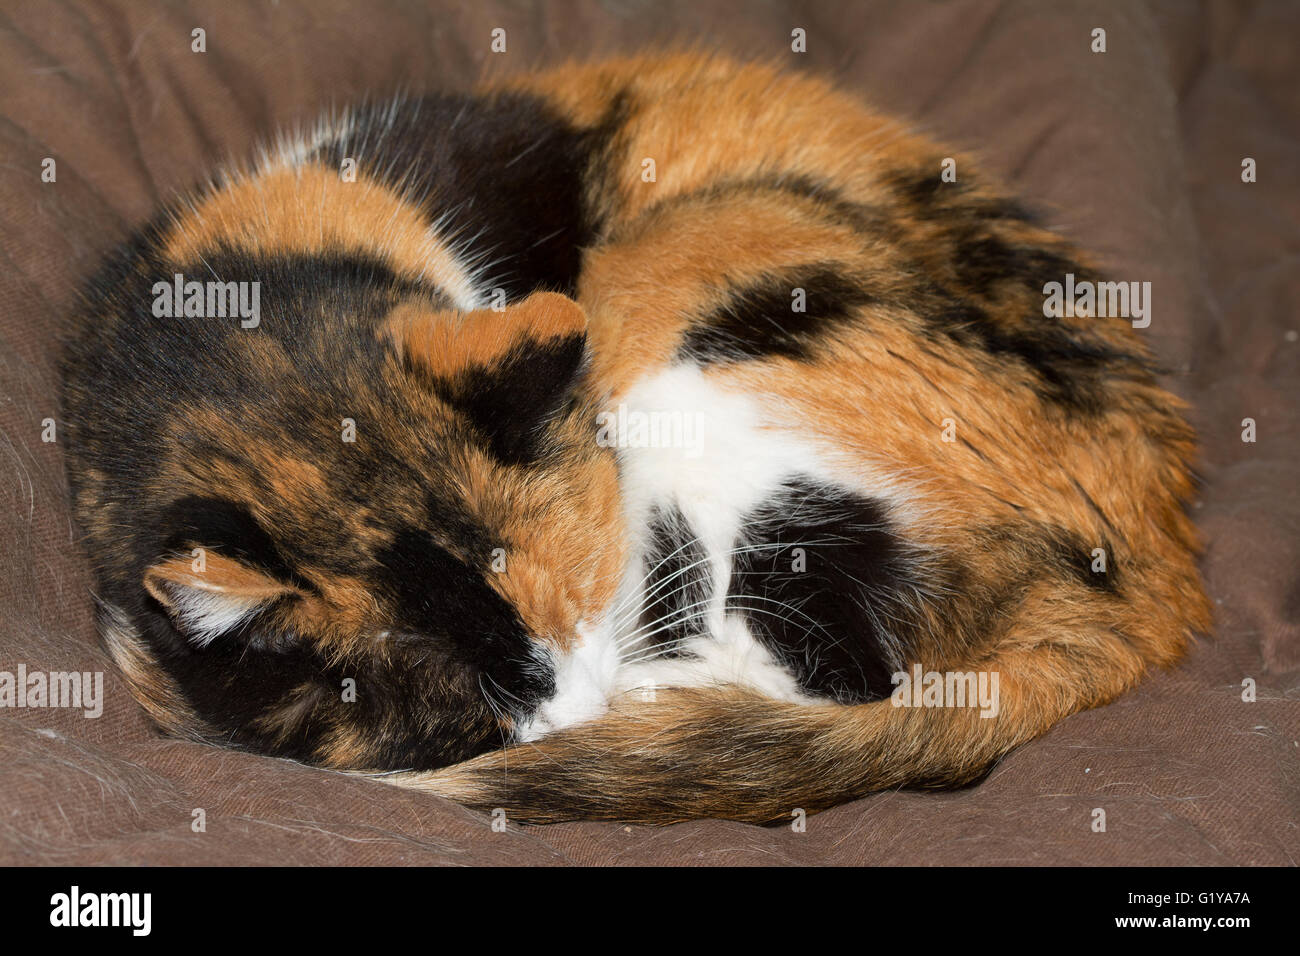 Gatta Calico addormentato, avvolto a ricciolo stretto, su marrone letto soffice Foto Stock